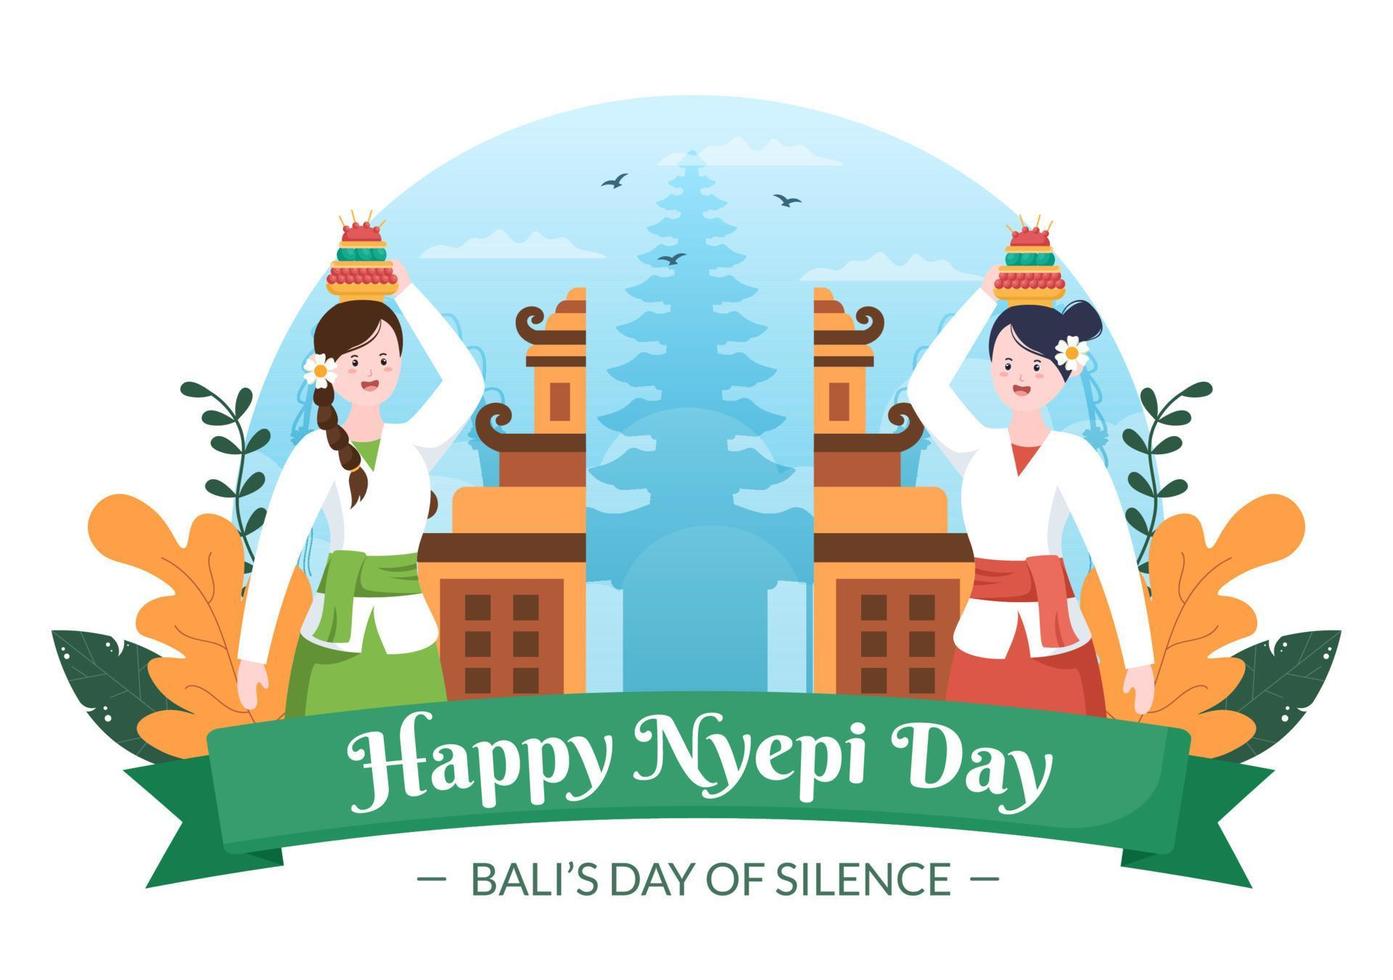 felice giorno di nyepi o silenzio di bali per le cerimonie indù a bali con geni galungan, kuningan e ngembak sullo sfondo dell'illustrazione del tempio vettore